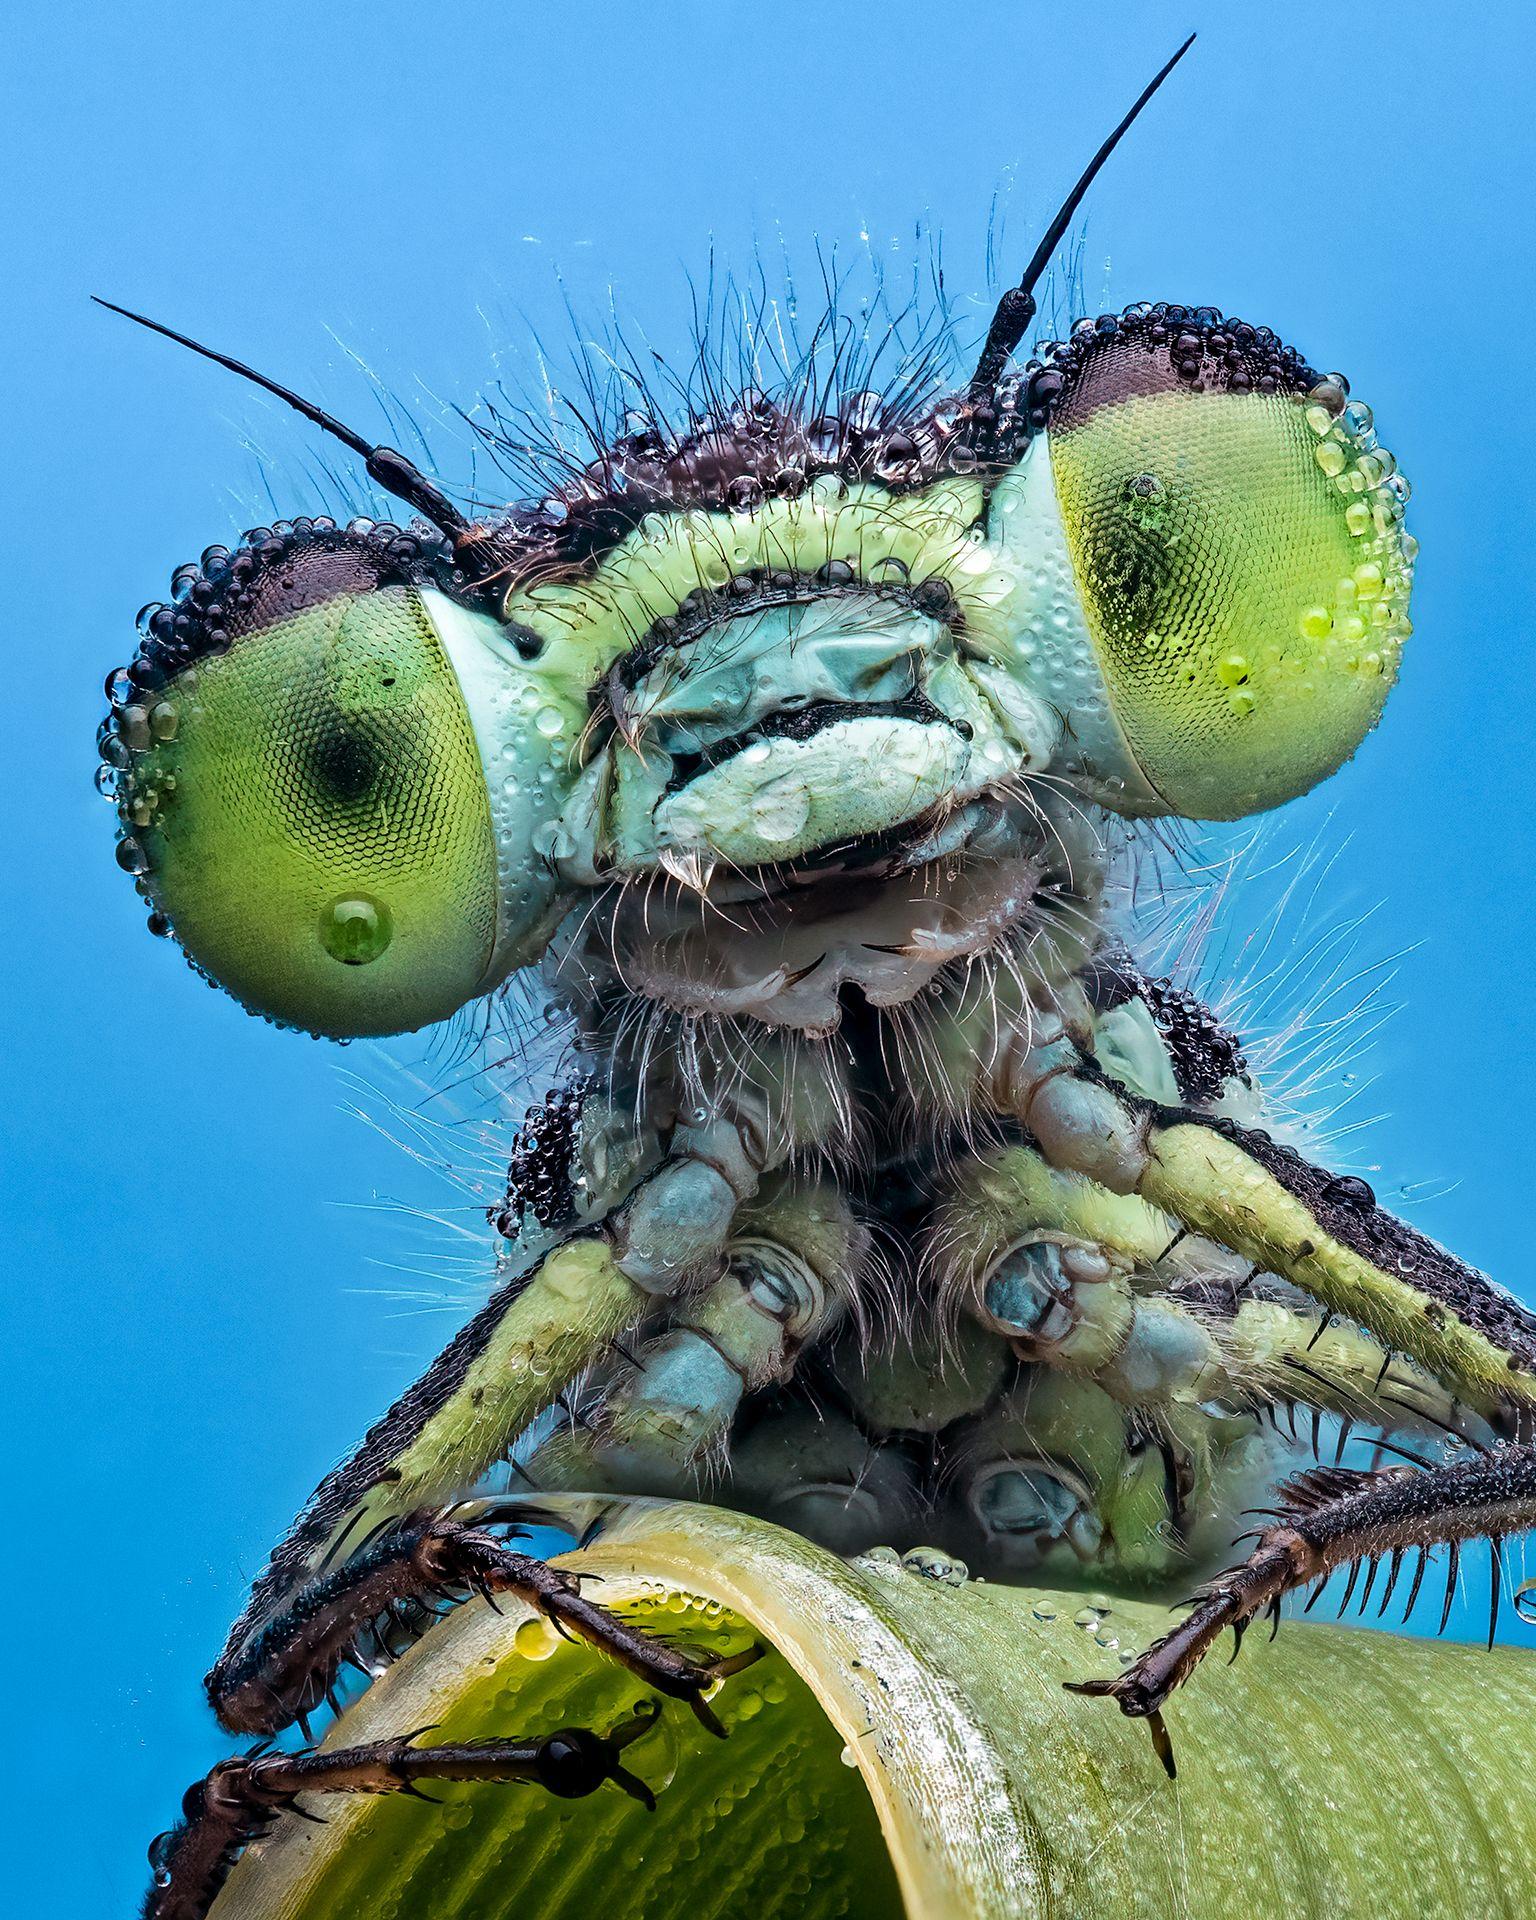 Böcek fotoğrafları yarışmasının kazananı guguklu arılar oldu - Son Dakika Yaşam Haberleri | Cumhuriyet